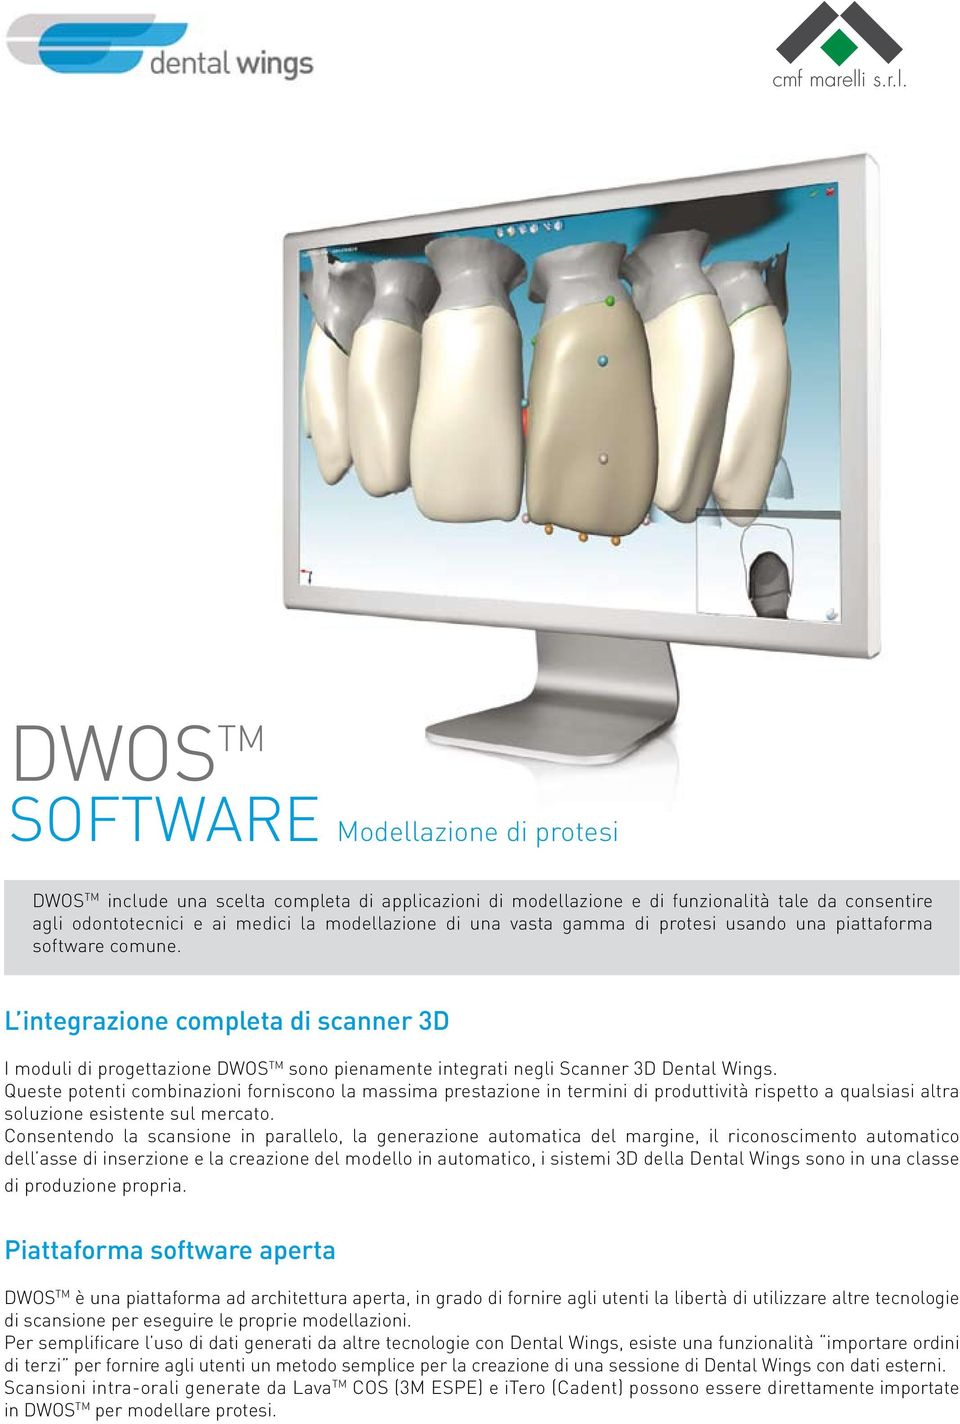 DWOS TM SOFTWARE Modellazione di protesi DWOS TM include una scelta completa di applicazioni di modellazione e di funzionalità tale da consentire agli odontotecnici e ai medici la modellazione di una